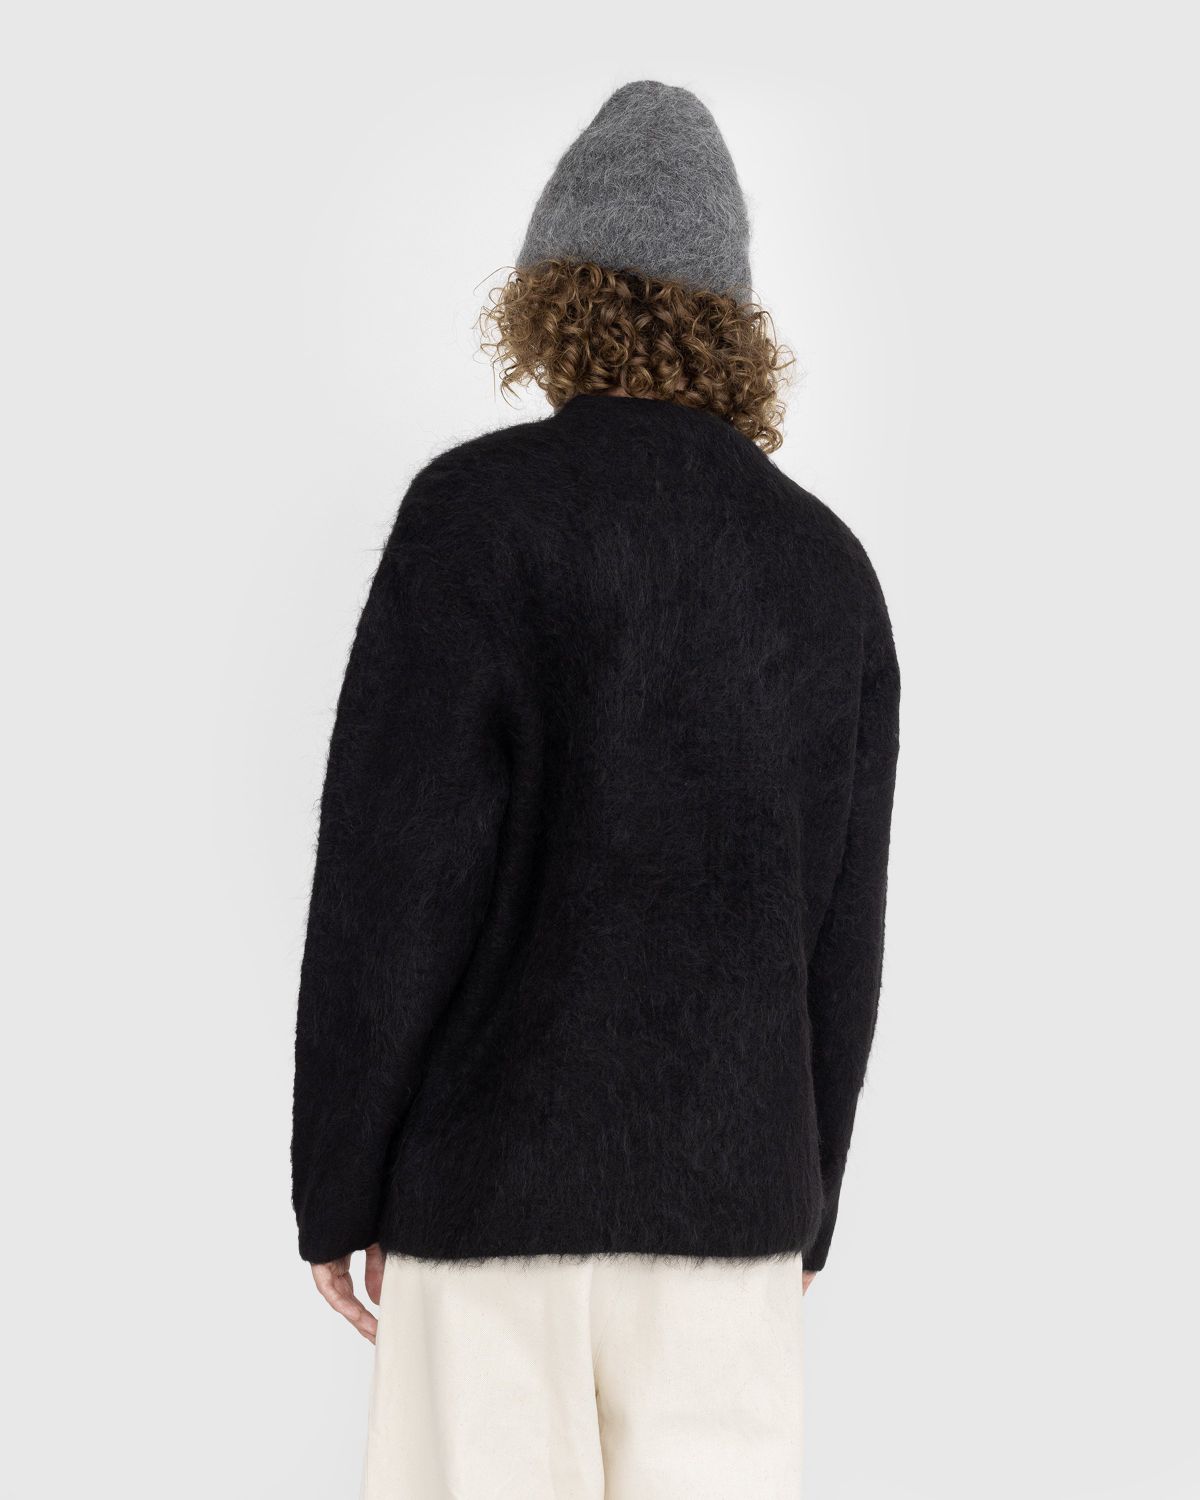 Séfr – Haru Sweater Black - Knitwear - Black - Image 3